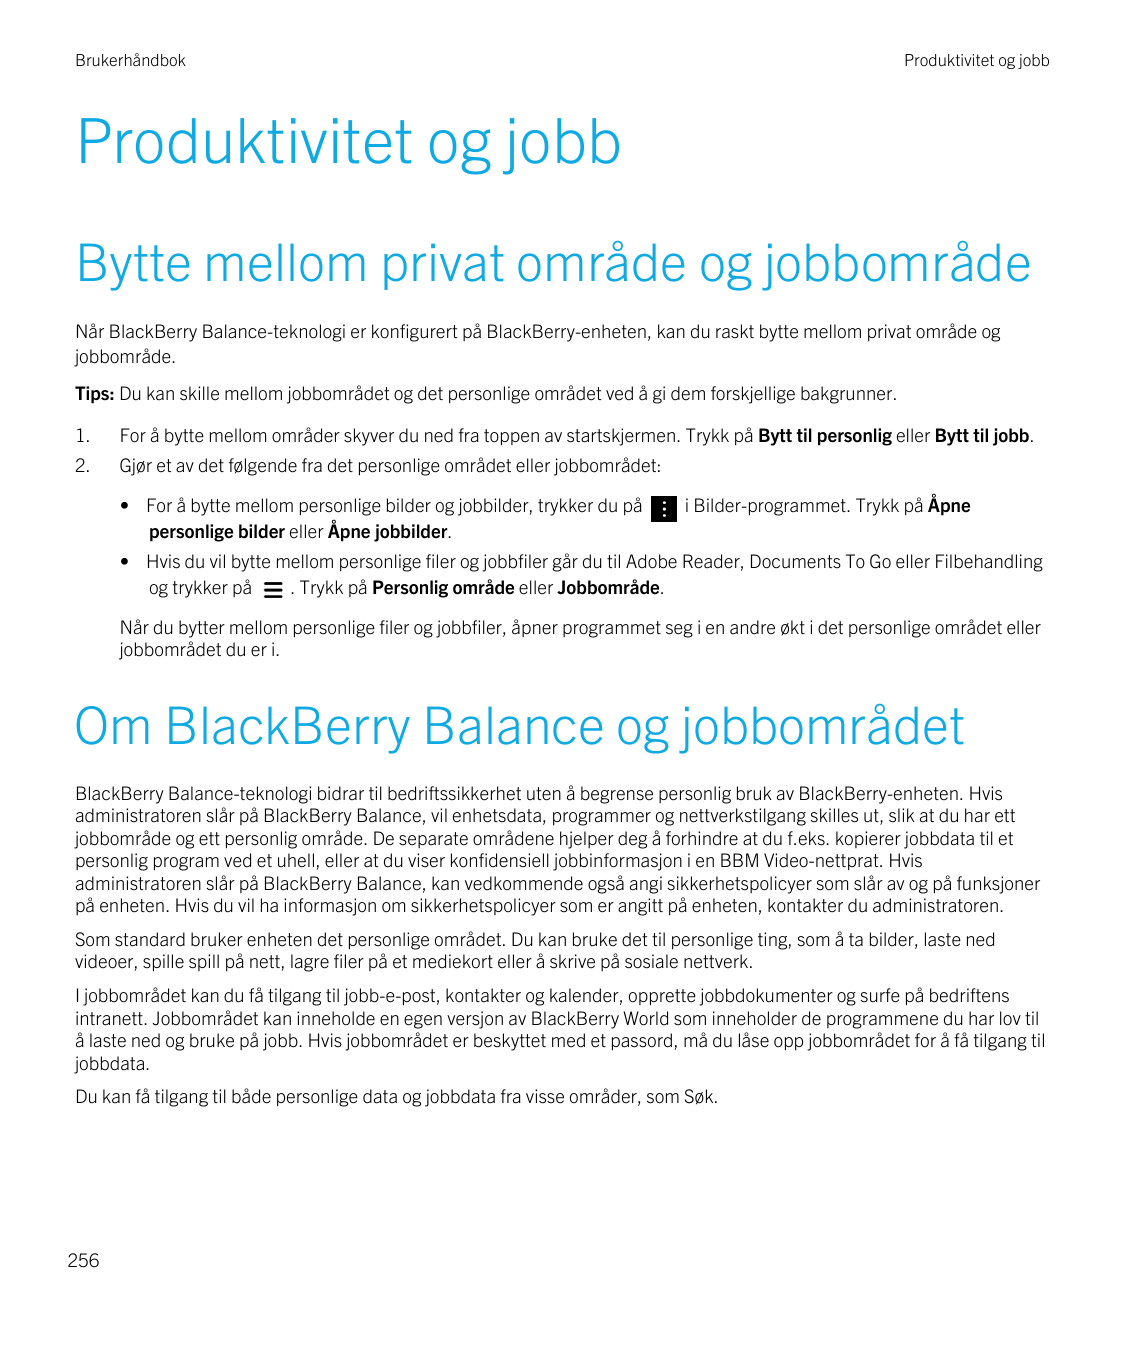 BrukerhåndbokProduktivitet og jobbProduktivitet og jobbBytte mellom privat område og jobbområdeNår BlackBerry Balance-teknologi 